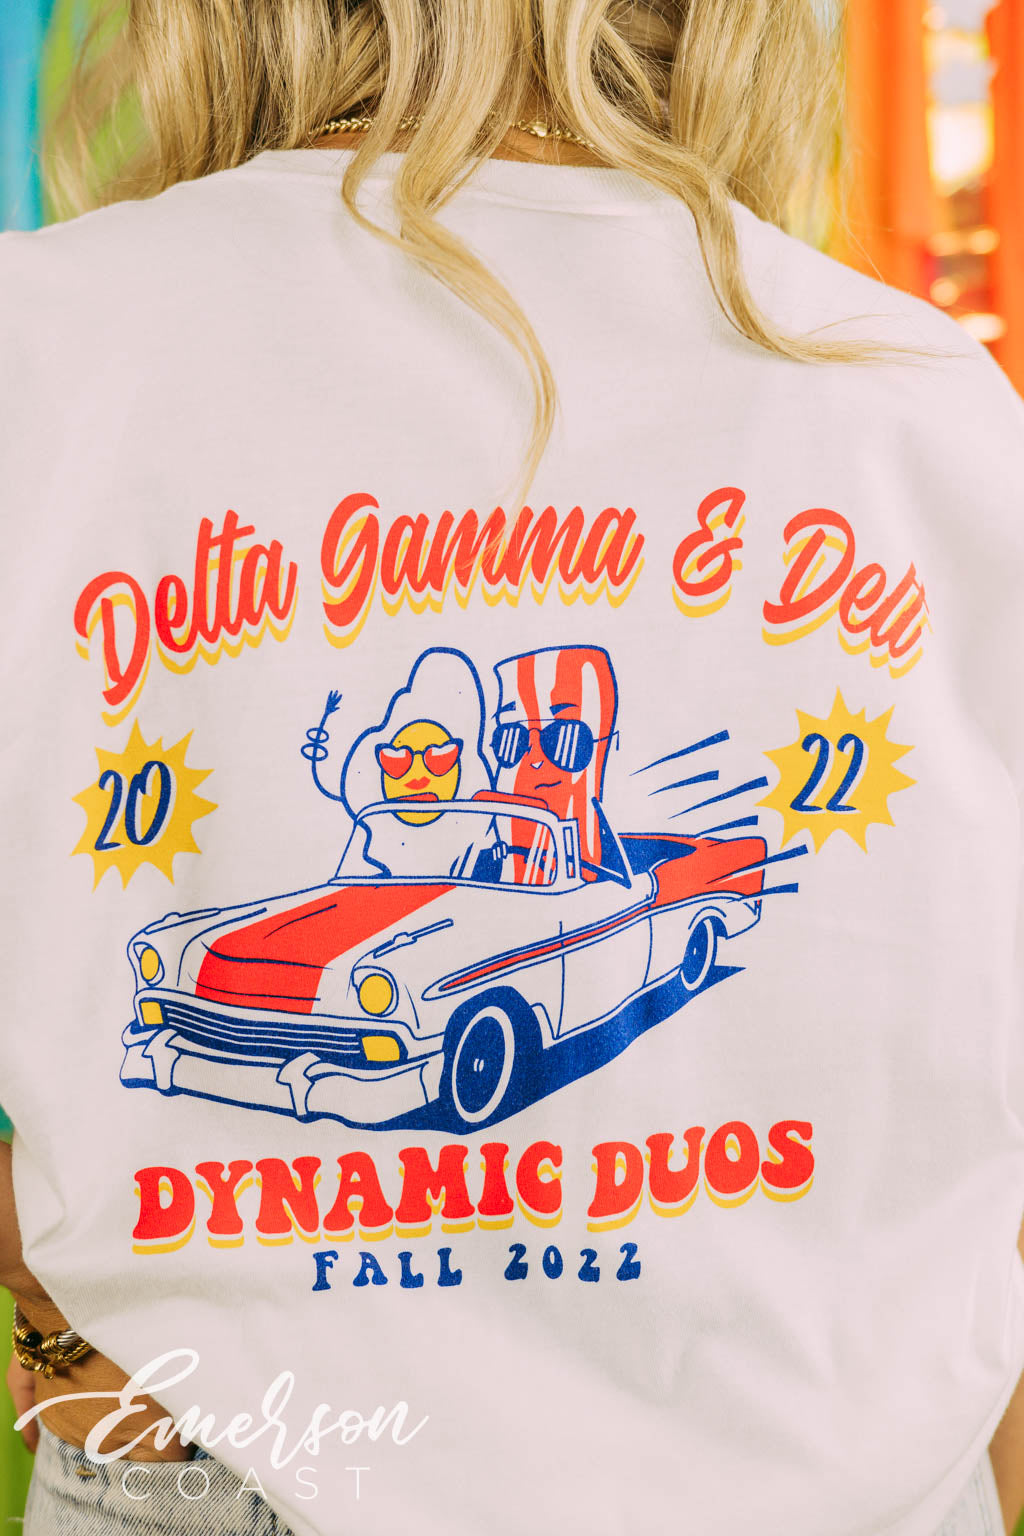 Delta Gamma Dynamic Duos Tshirt